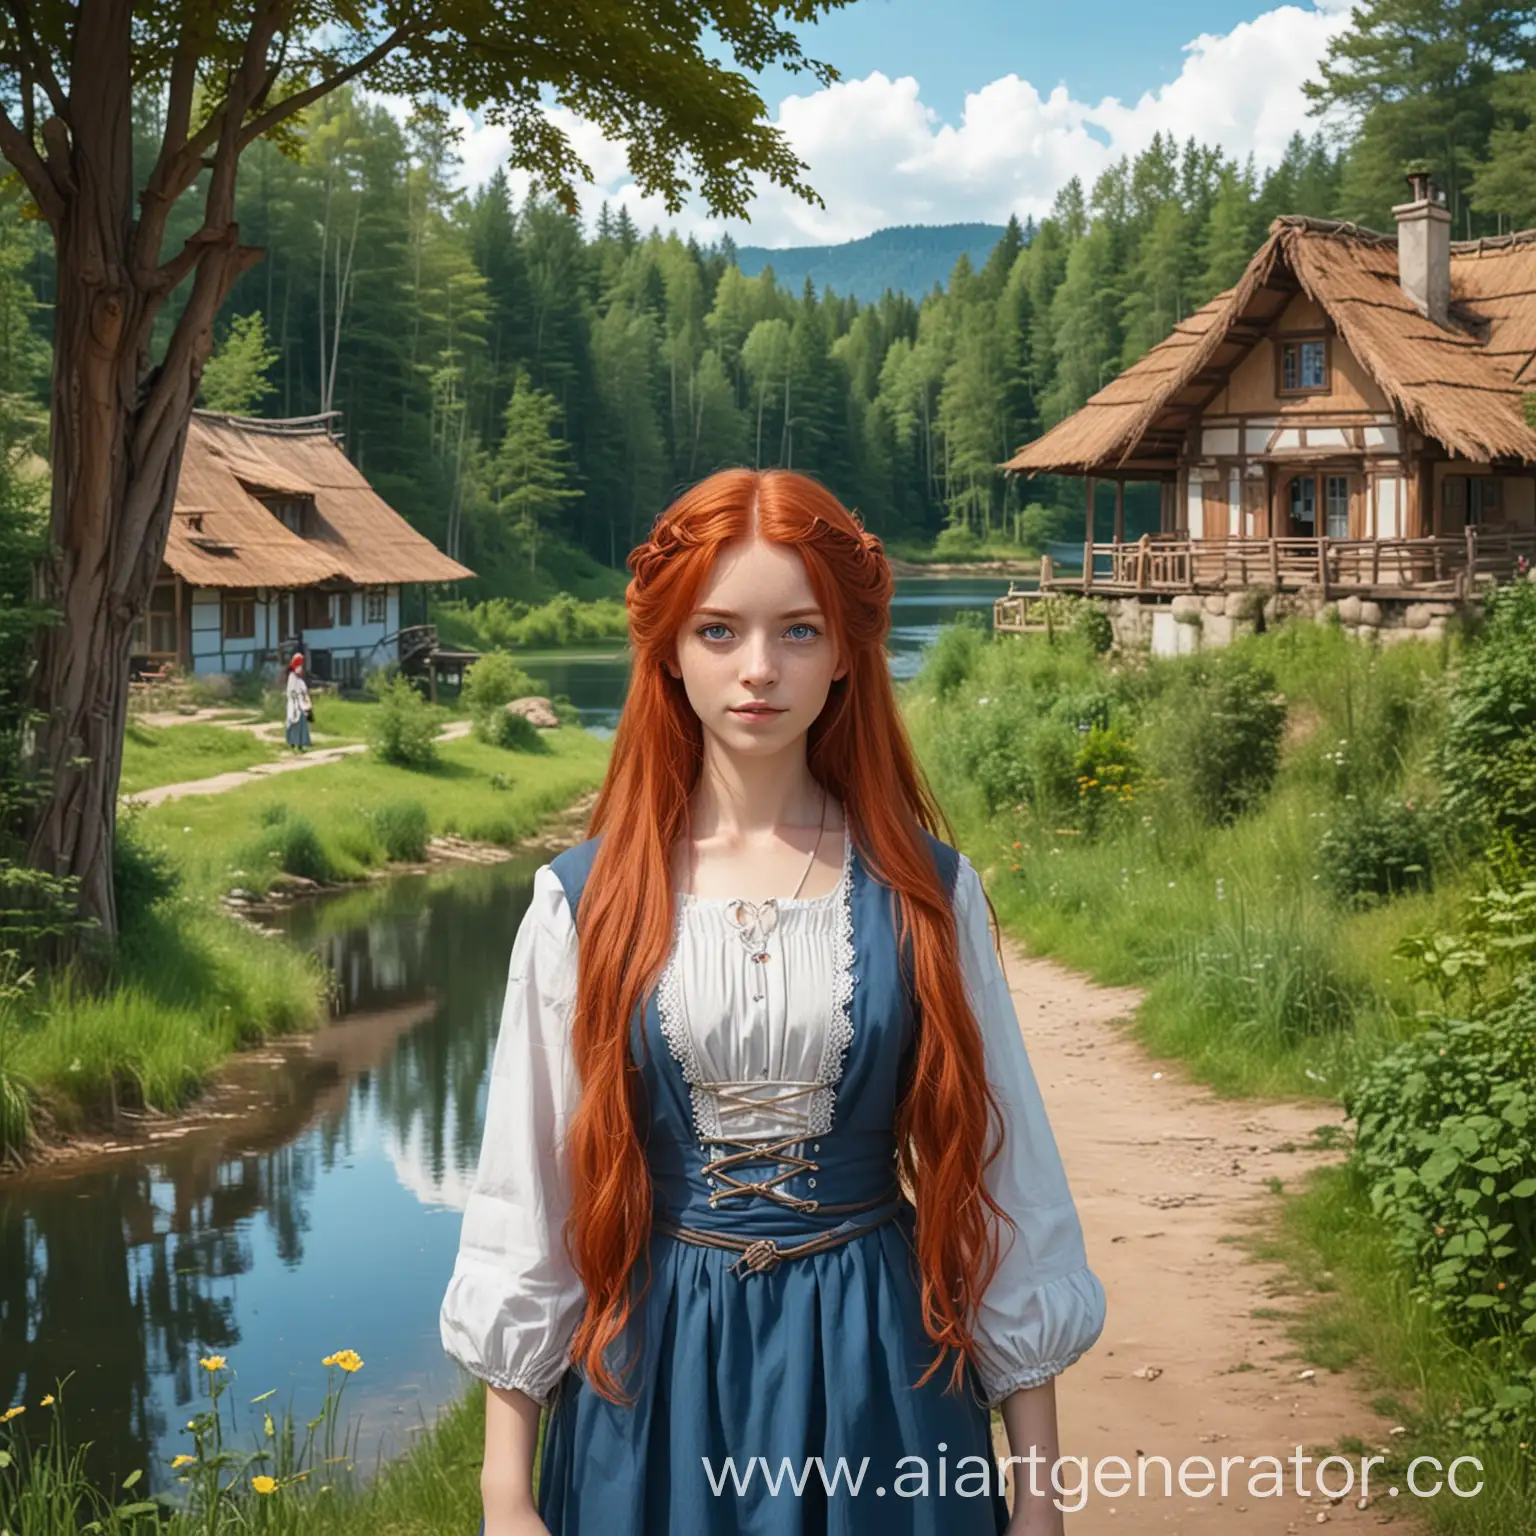 Девушка взрослая с русыми длинными волосами и ярко голубыми глазами. Она одета в деревенскую женскую одежду. Сзади густой лес и дорожка до маленького дома с озером. Стиль аниме-комикс